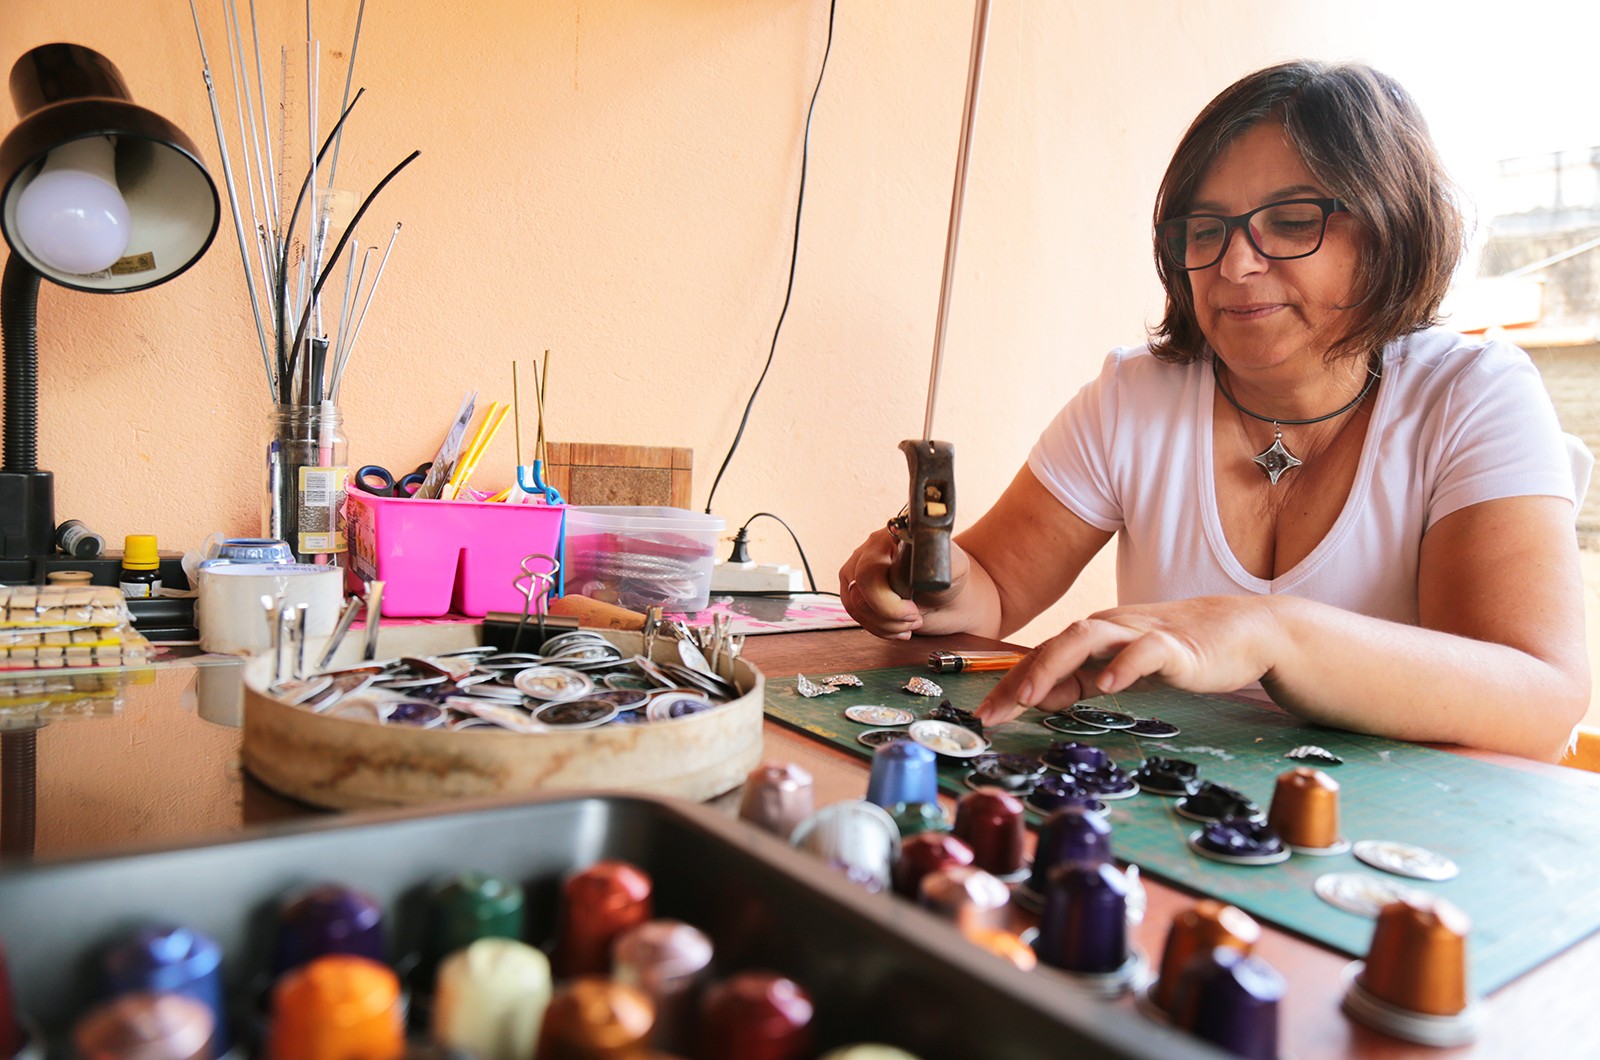 Artista plástica de Guaranésia cria acessórios e objetos utilizando materiais descartáveis do café (Foto: Viola Júnior)